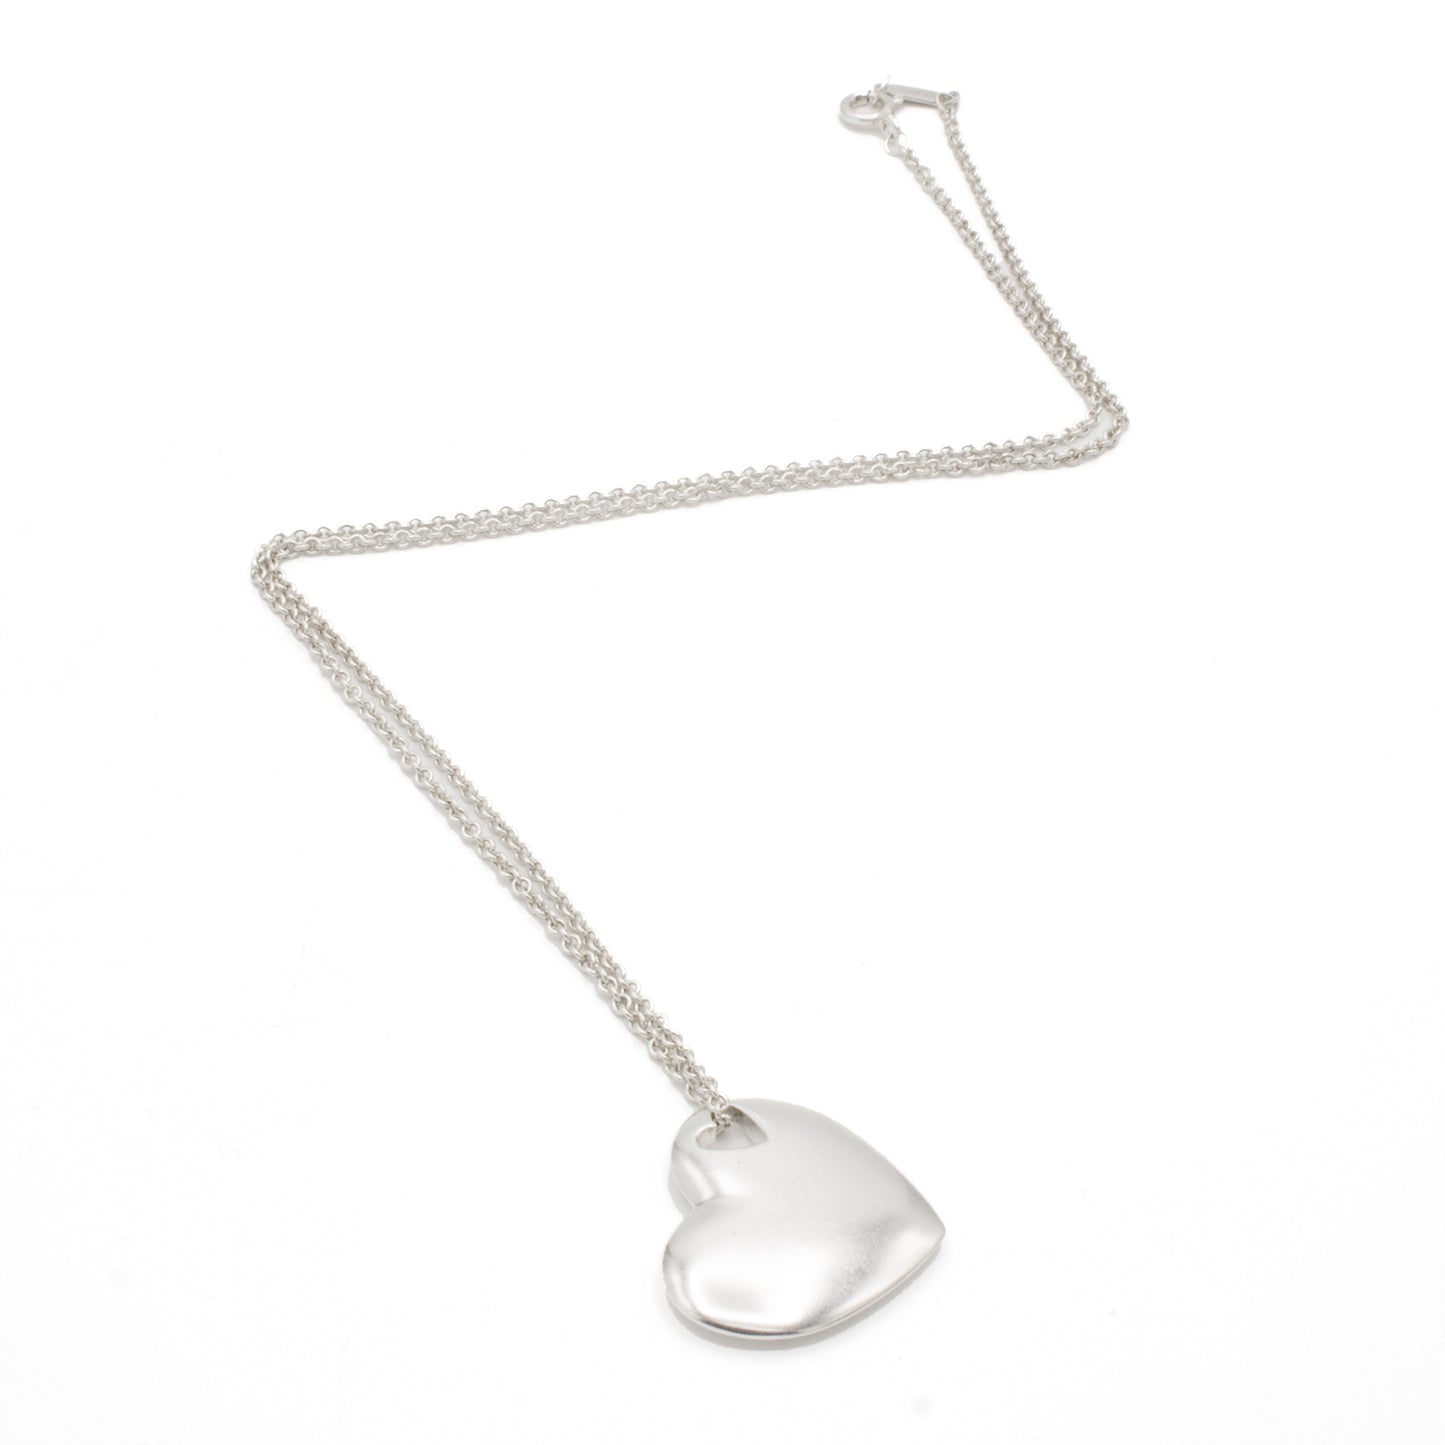 Tiffany & Co "2 Heart" necklace